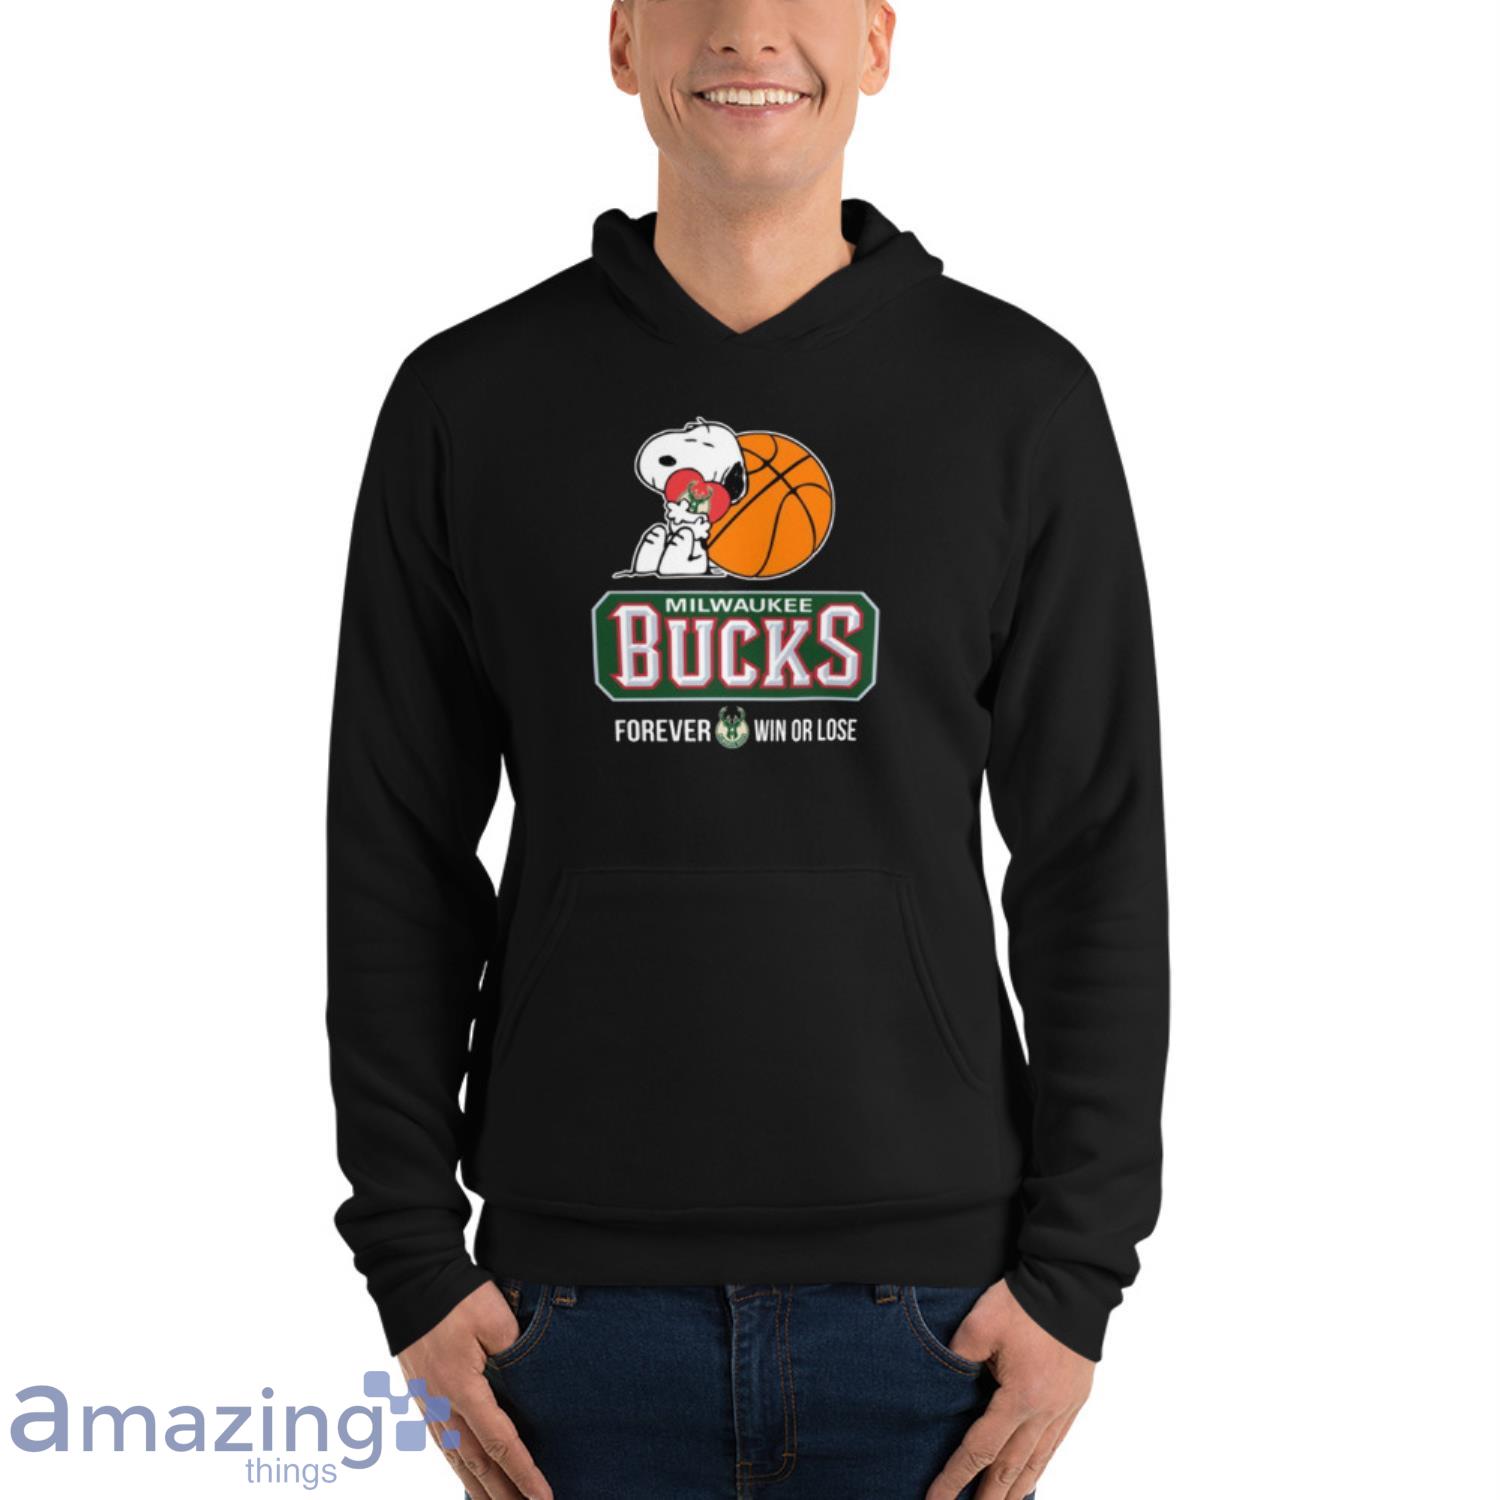 Milwaukee Bucks T-shirt 3D basketball for fans